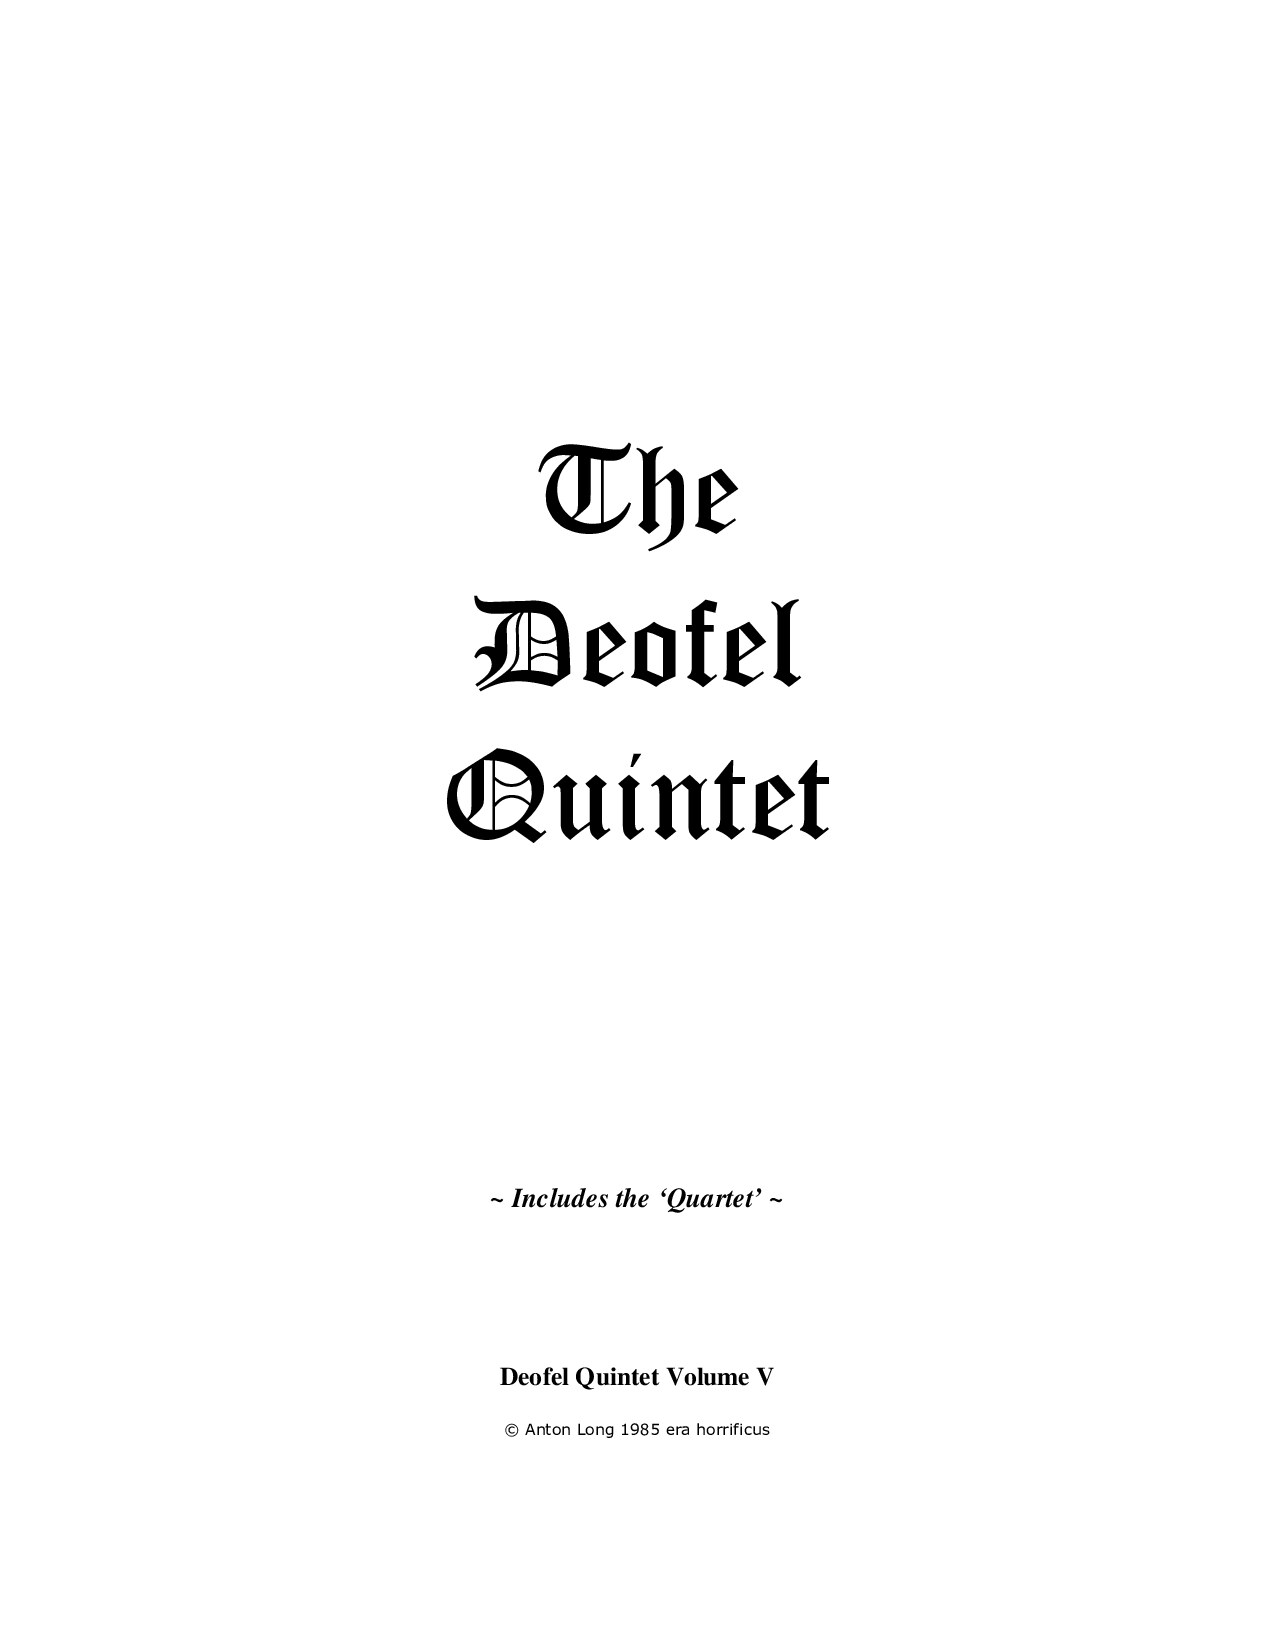 The Deofel Quintet